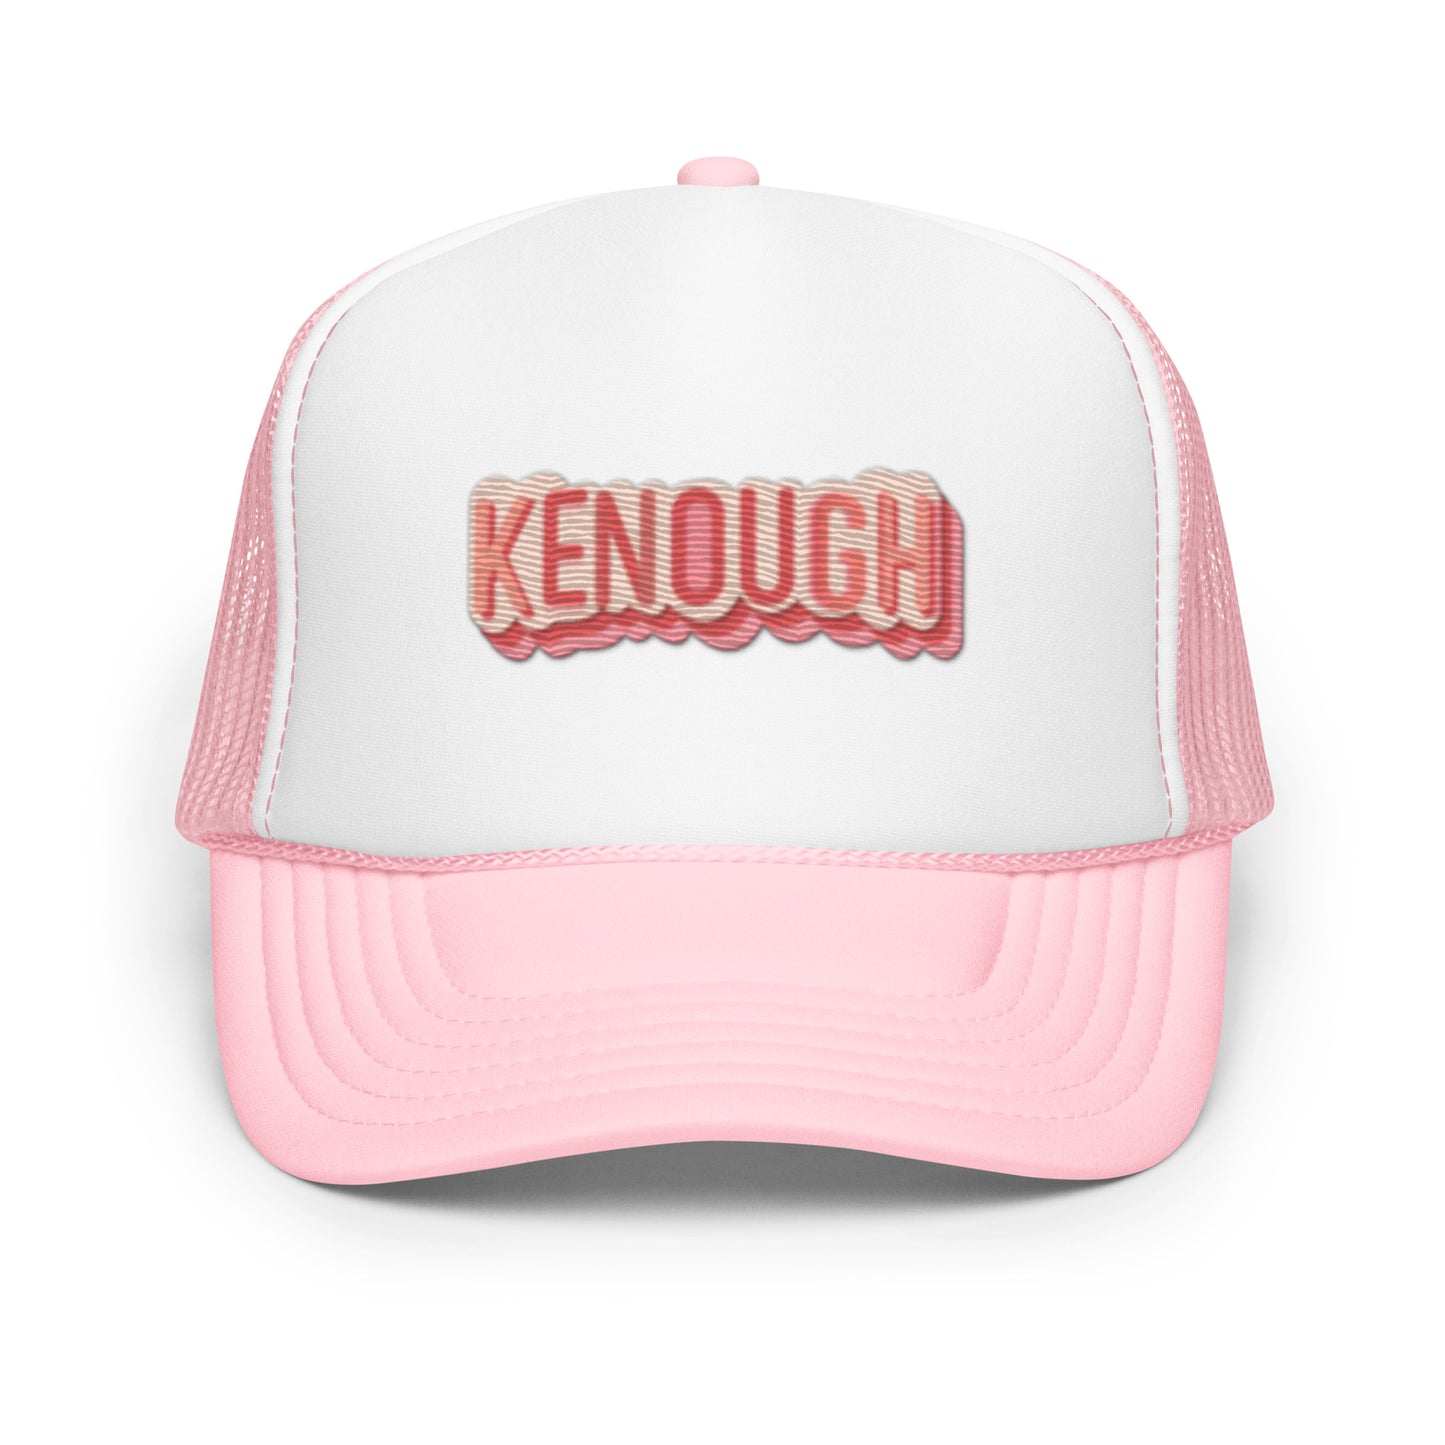 Kenough Foam trucker hat